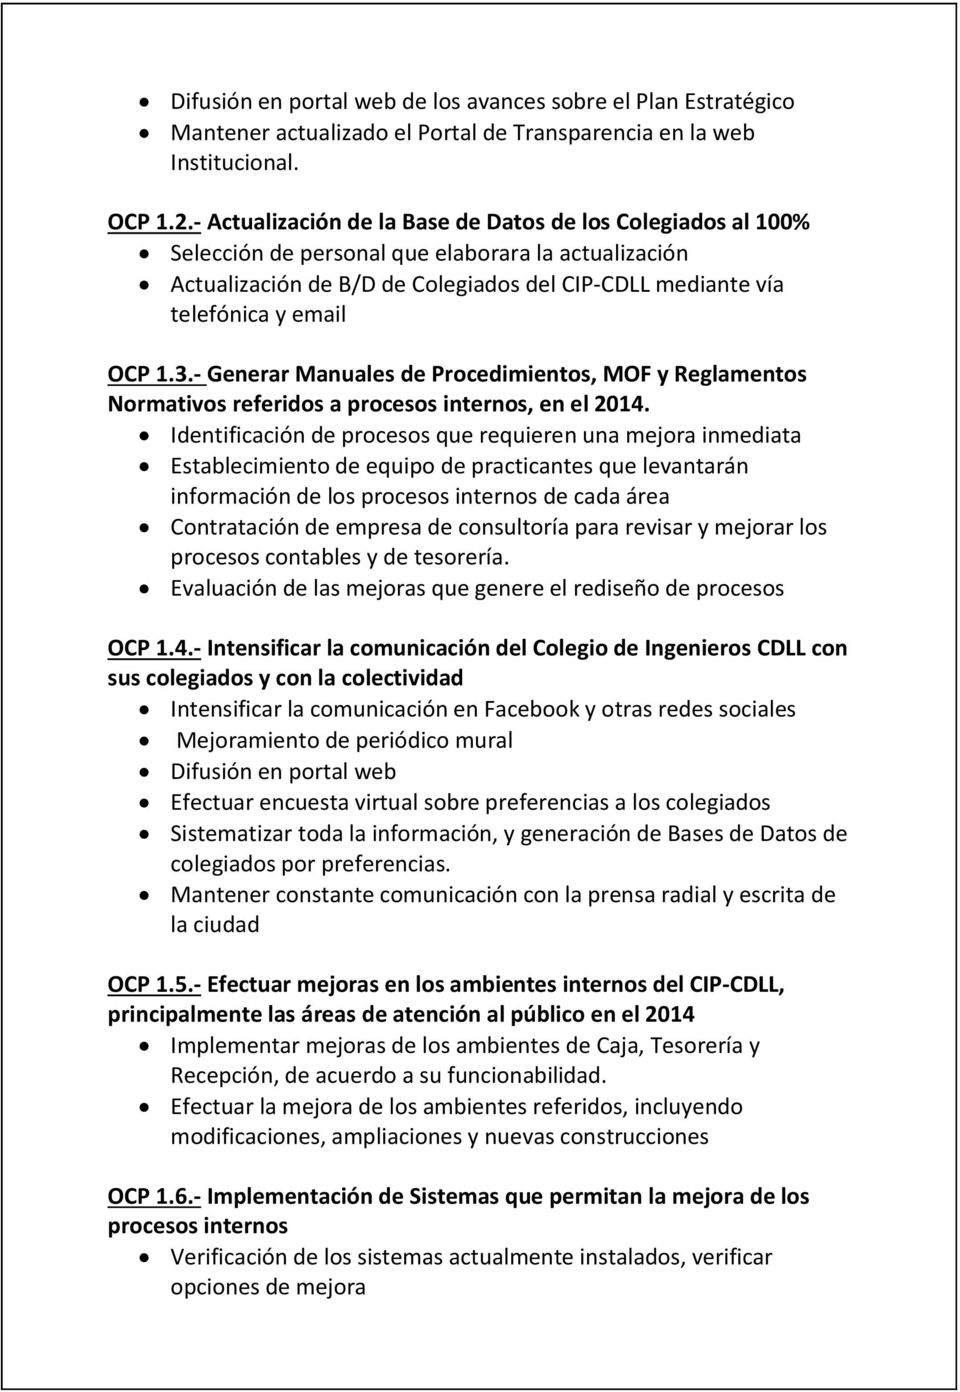 1.3.- Generar Manuales de Procedimientos, MOF y Reglamentos Normativos referidos a procesos internos, en el 2014.